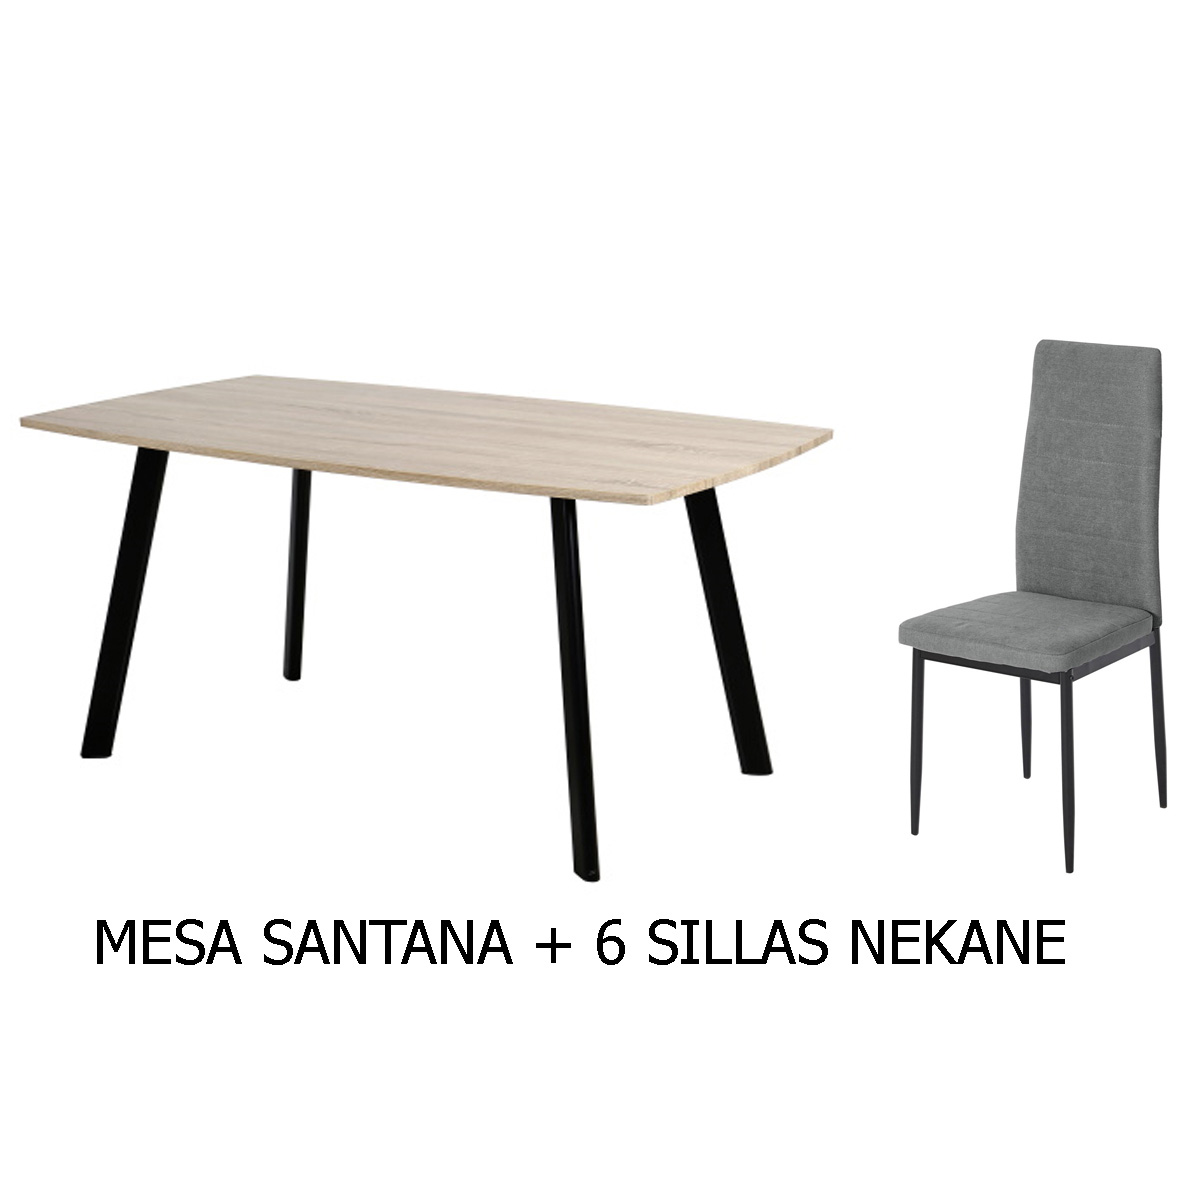 Conjunto mesa SANTANA+ 6 sillas NEKANE